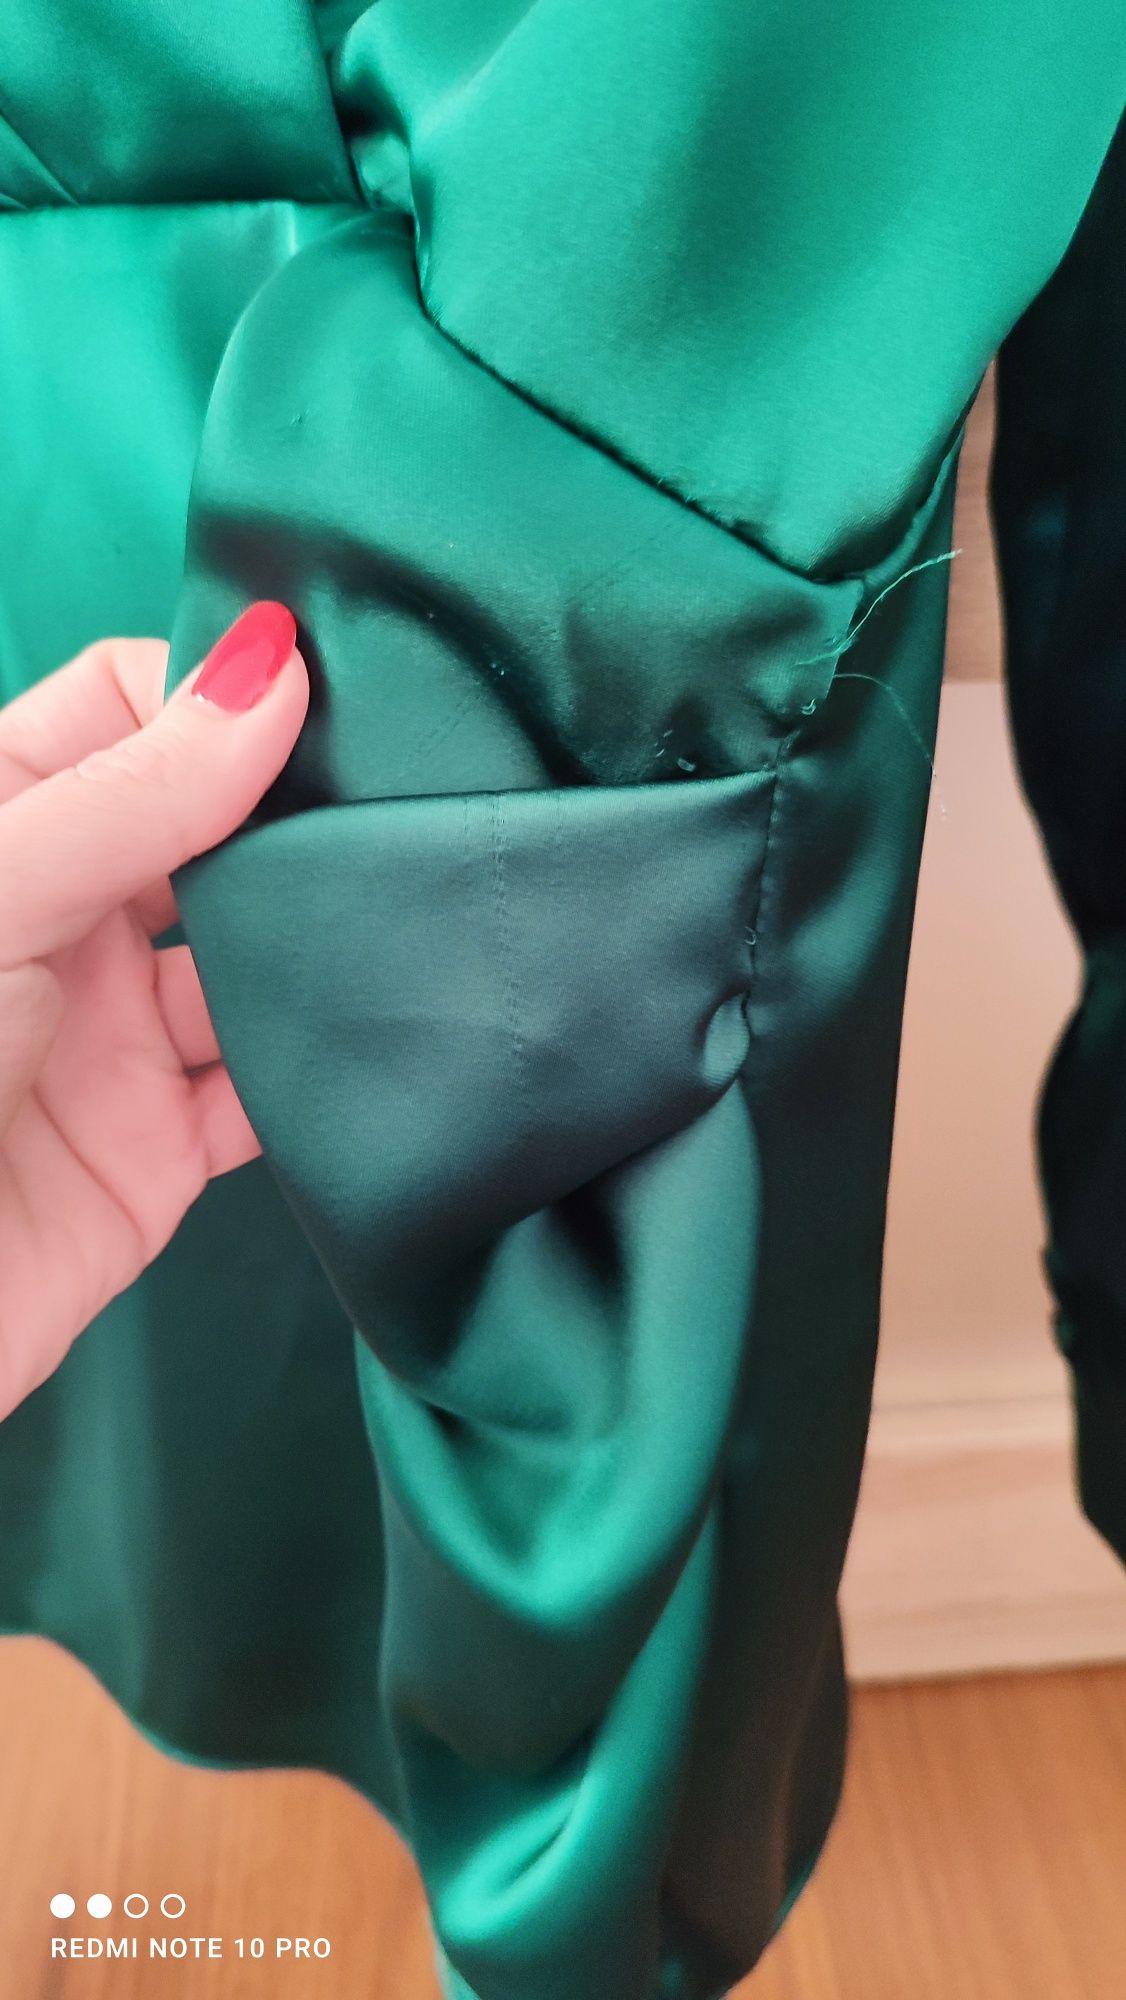 Śliczna sukienka satynowa Zara zielona Pinterest viralowa koktajlowa